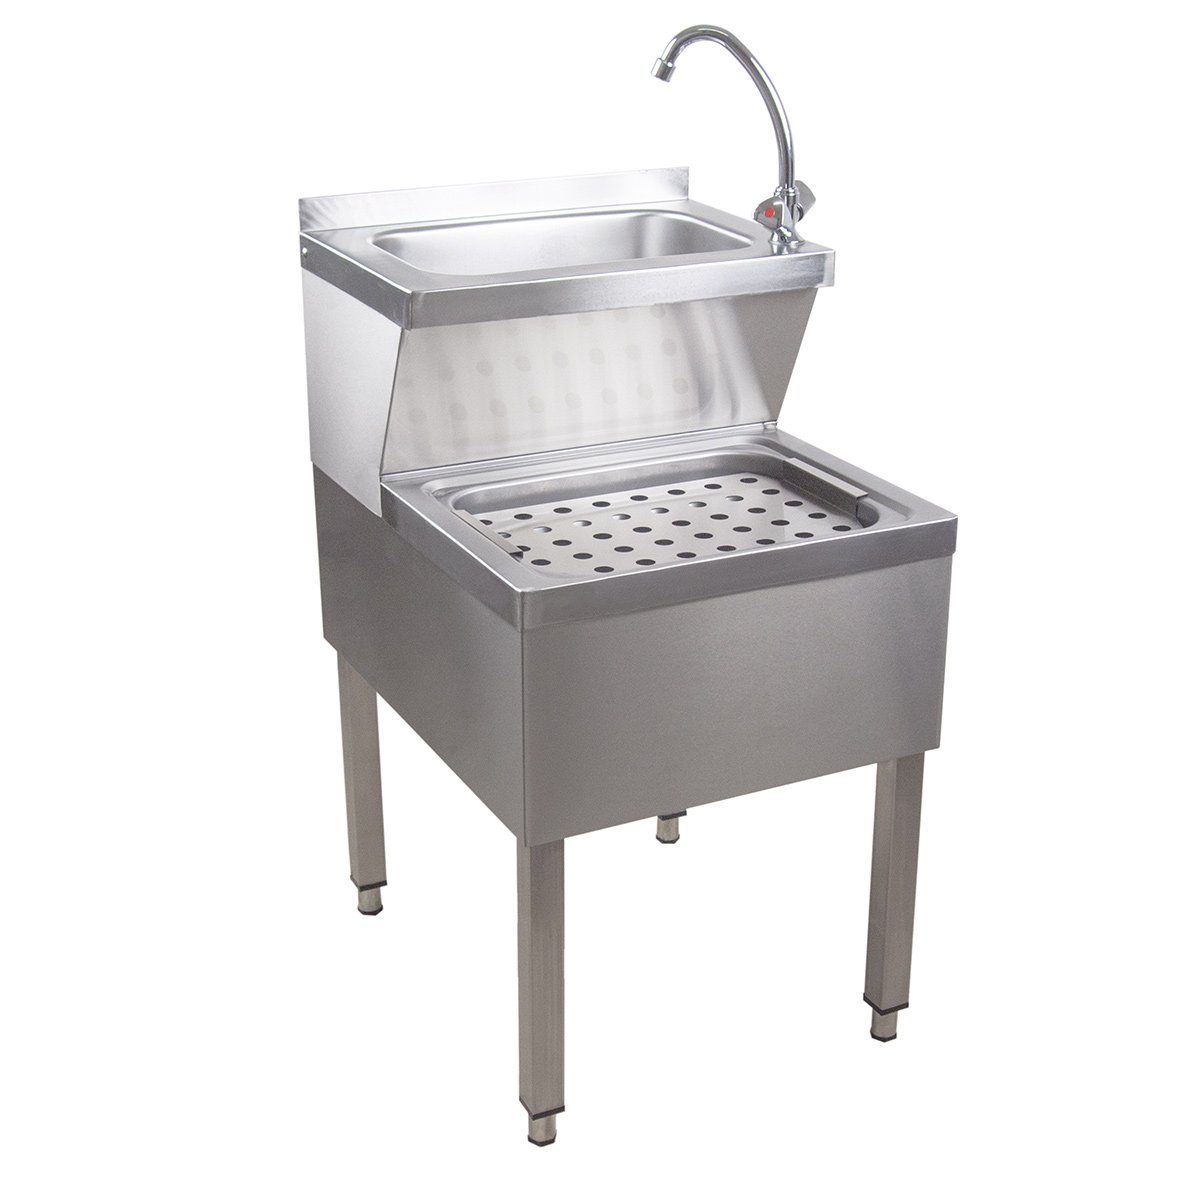 Edelstahl, Küchenspüle Handwaschbecken Kombi Saro Gastro - Handwaschbecken